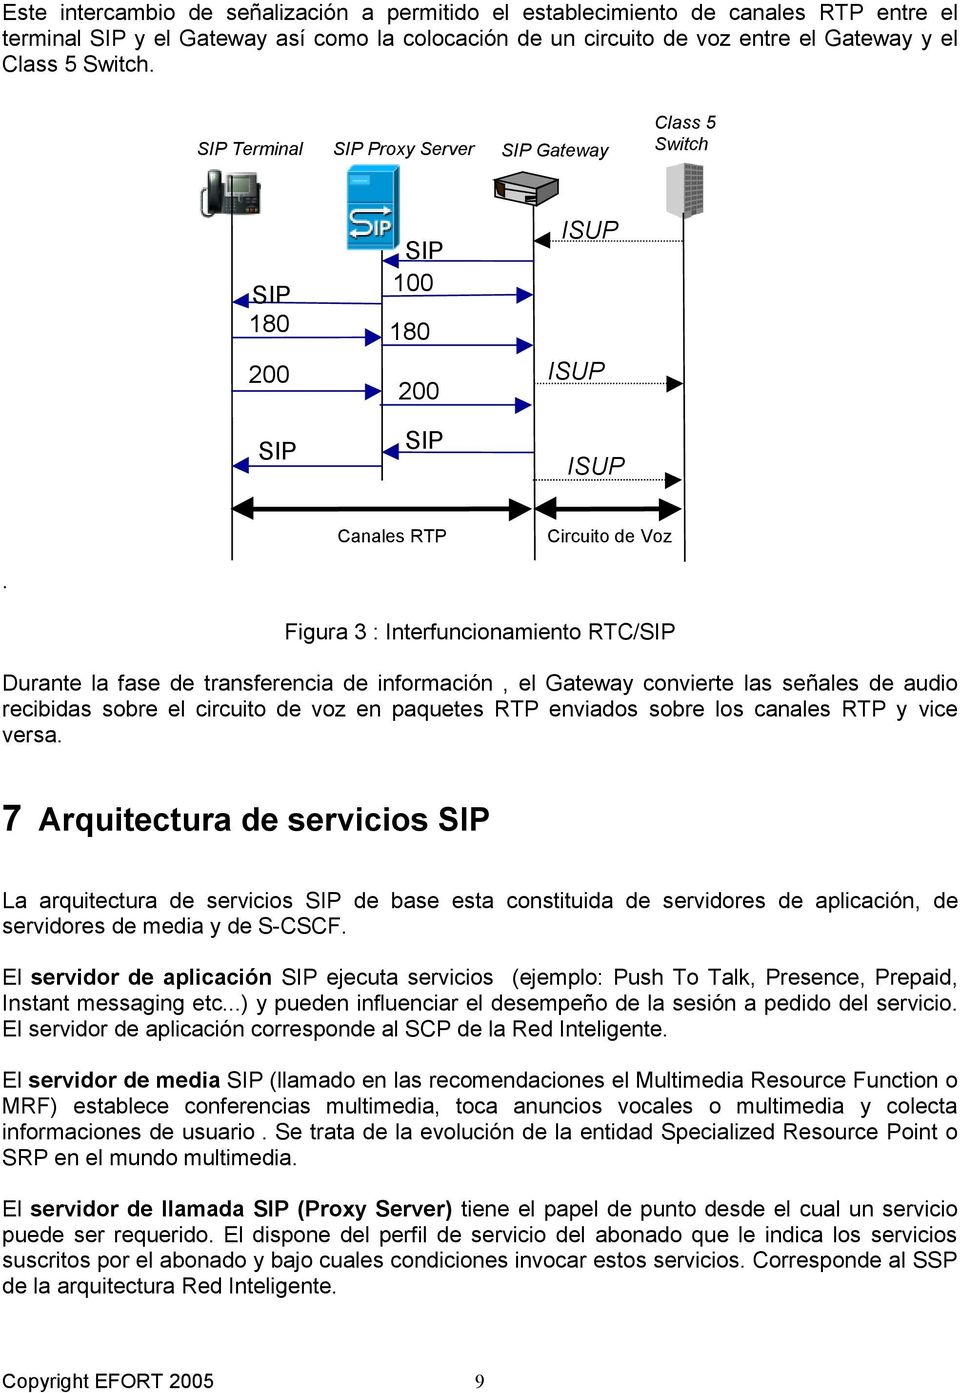 Figura 3 : Interfuncionamiento RTC/SIP Durante la fase de transferencia de información, el Gateway convierte las señales de audio recibidas sobre el circuito de voz en paquetes RTP enviados sobre los